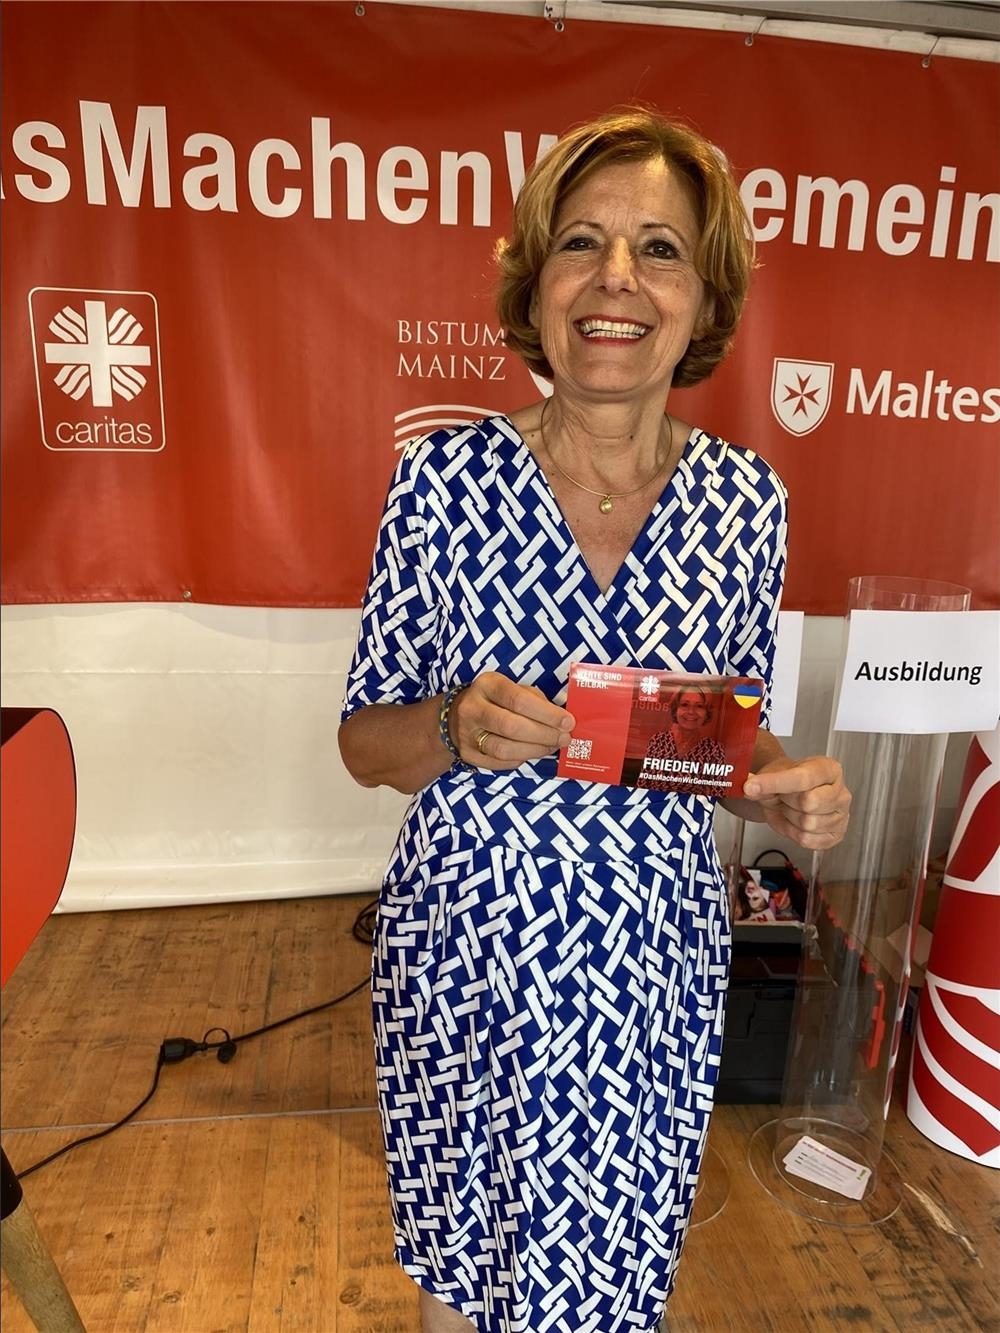 Ministerpräsidentin Malu Dreyer zu Besuch am Stand von Caritas, Bistum und Malteser (Foto: DiCV Mainz, Referat Kommunikation)